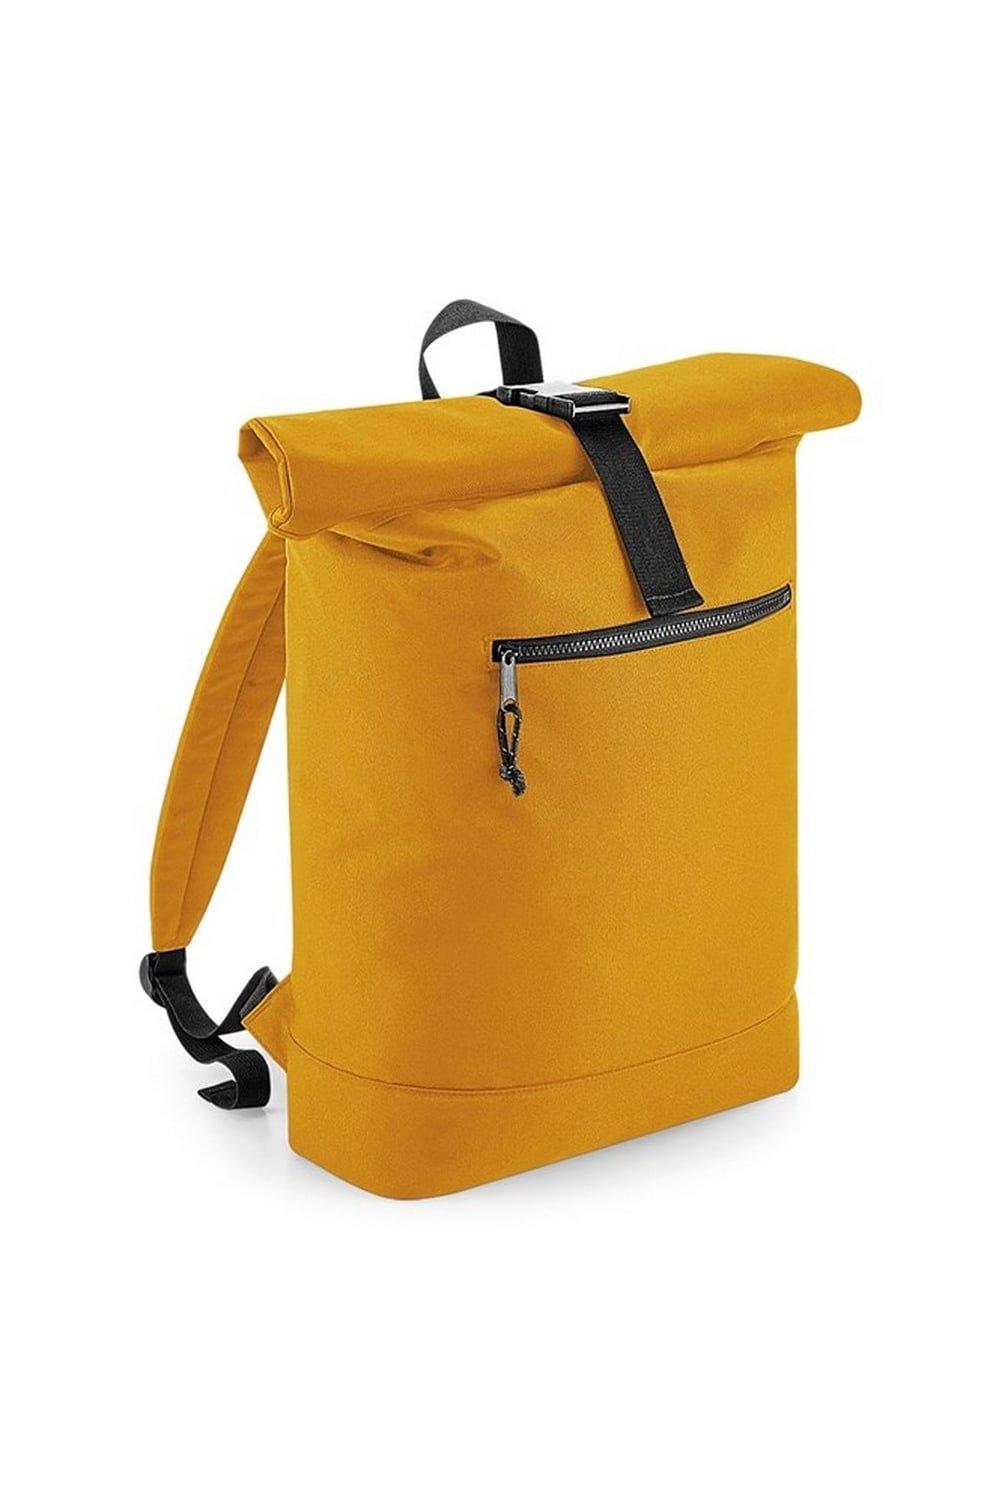 Рюкзак из переработанного материала с загнутым верхом Bagbase, желтый